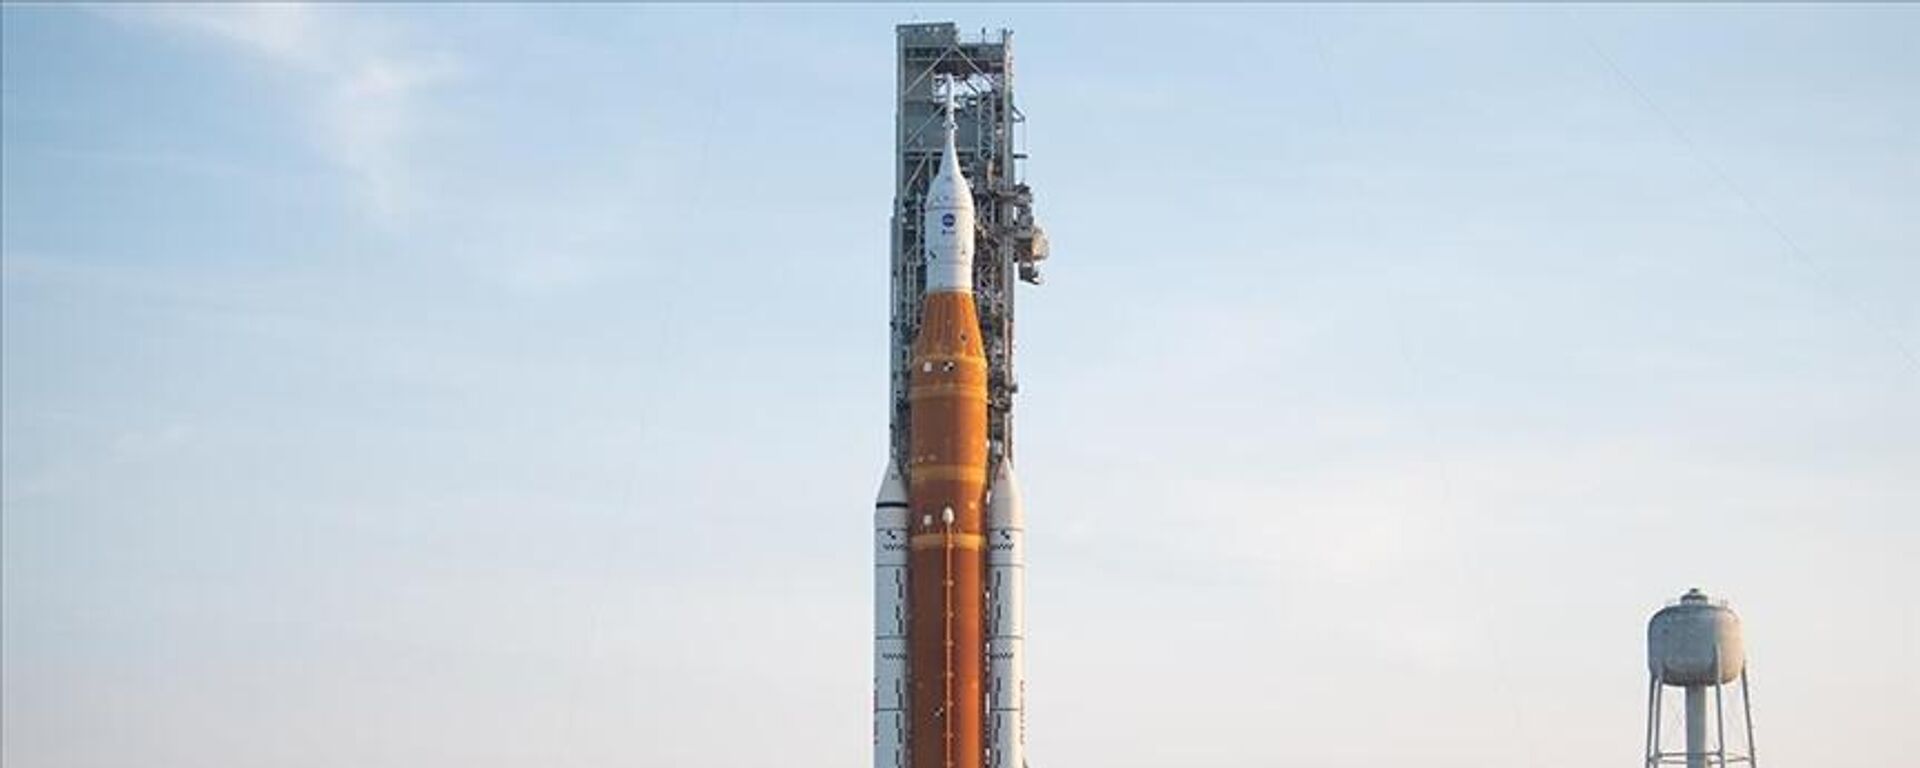 NASA'nın Artemis I misyonu kapsamındaki Uzay Fırlatma Sistemi (SLS) denilen mega roketi  - Sputnik Türkiye, 1920, 29.08.2022